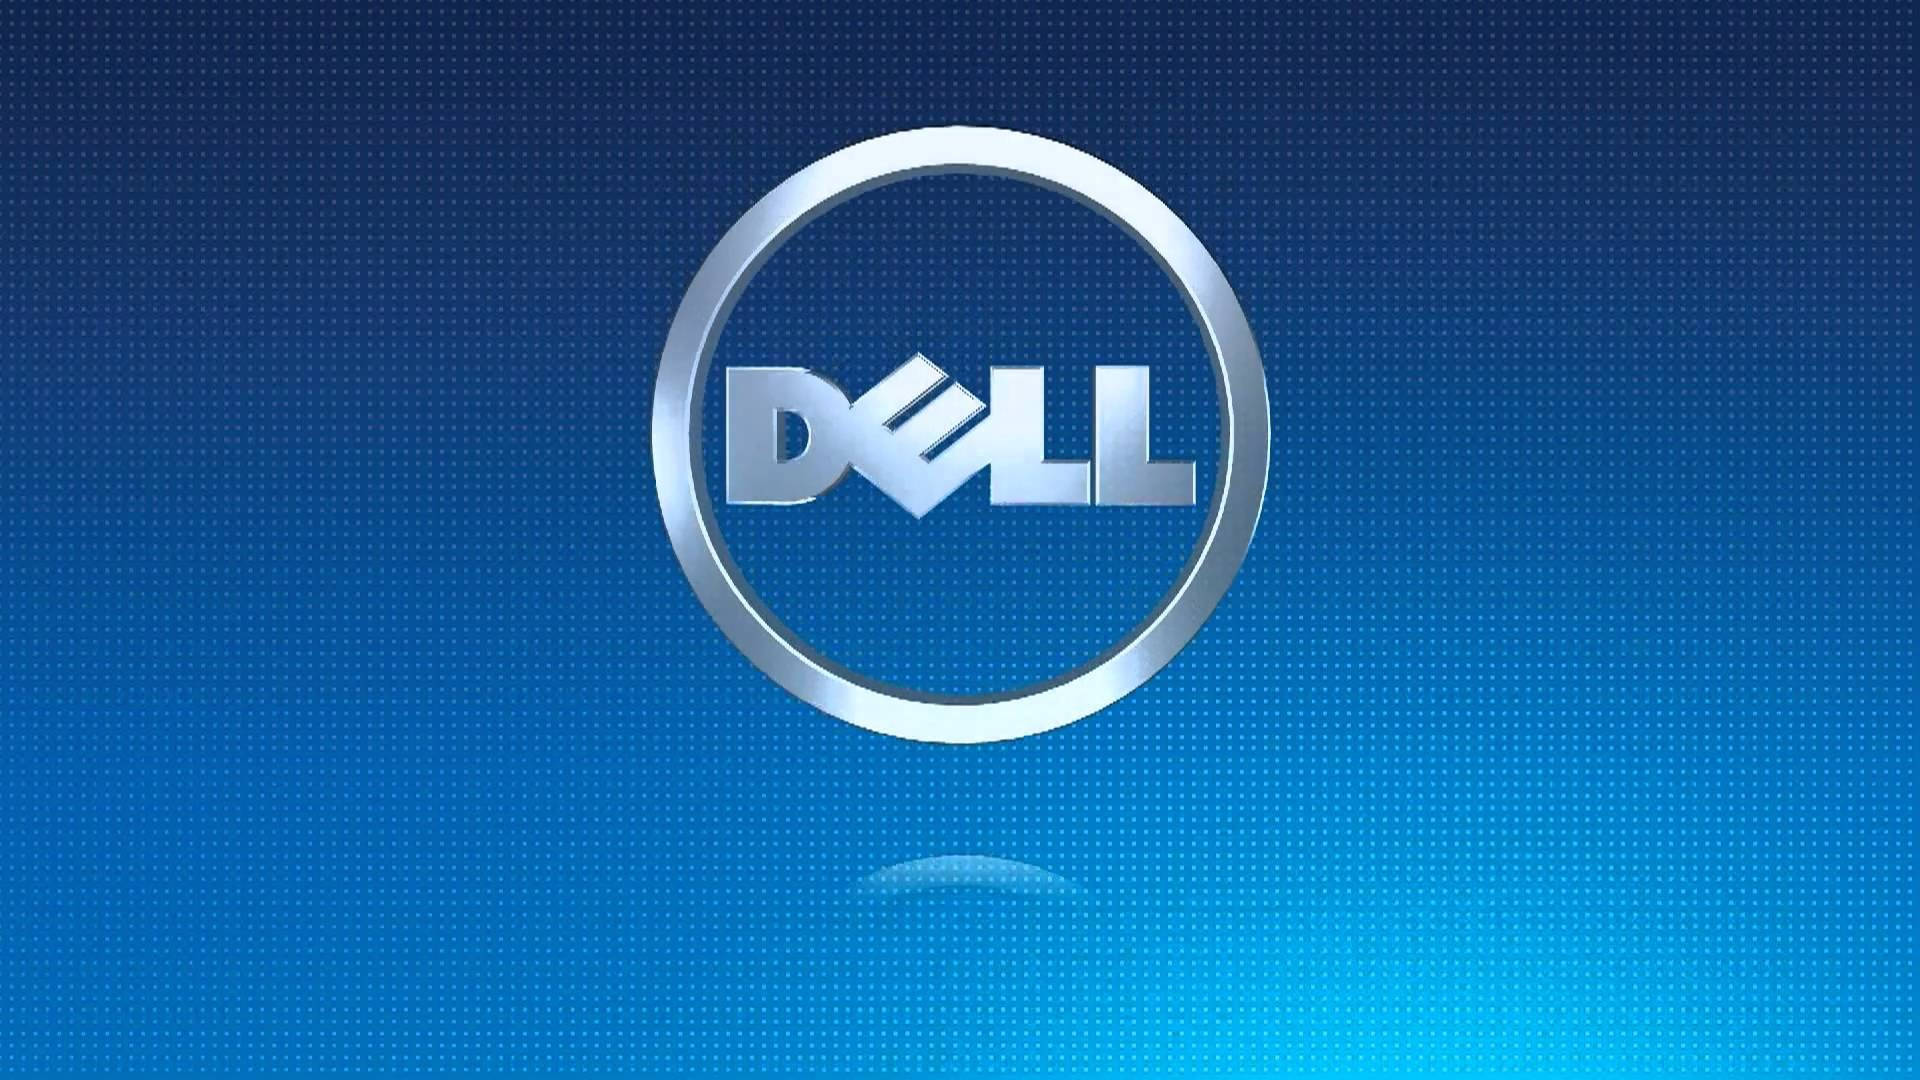 Logotipopontilhado Da Dell Em Hd. Papel de Parede